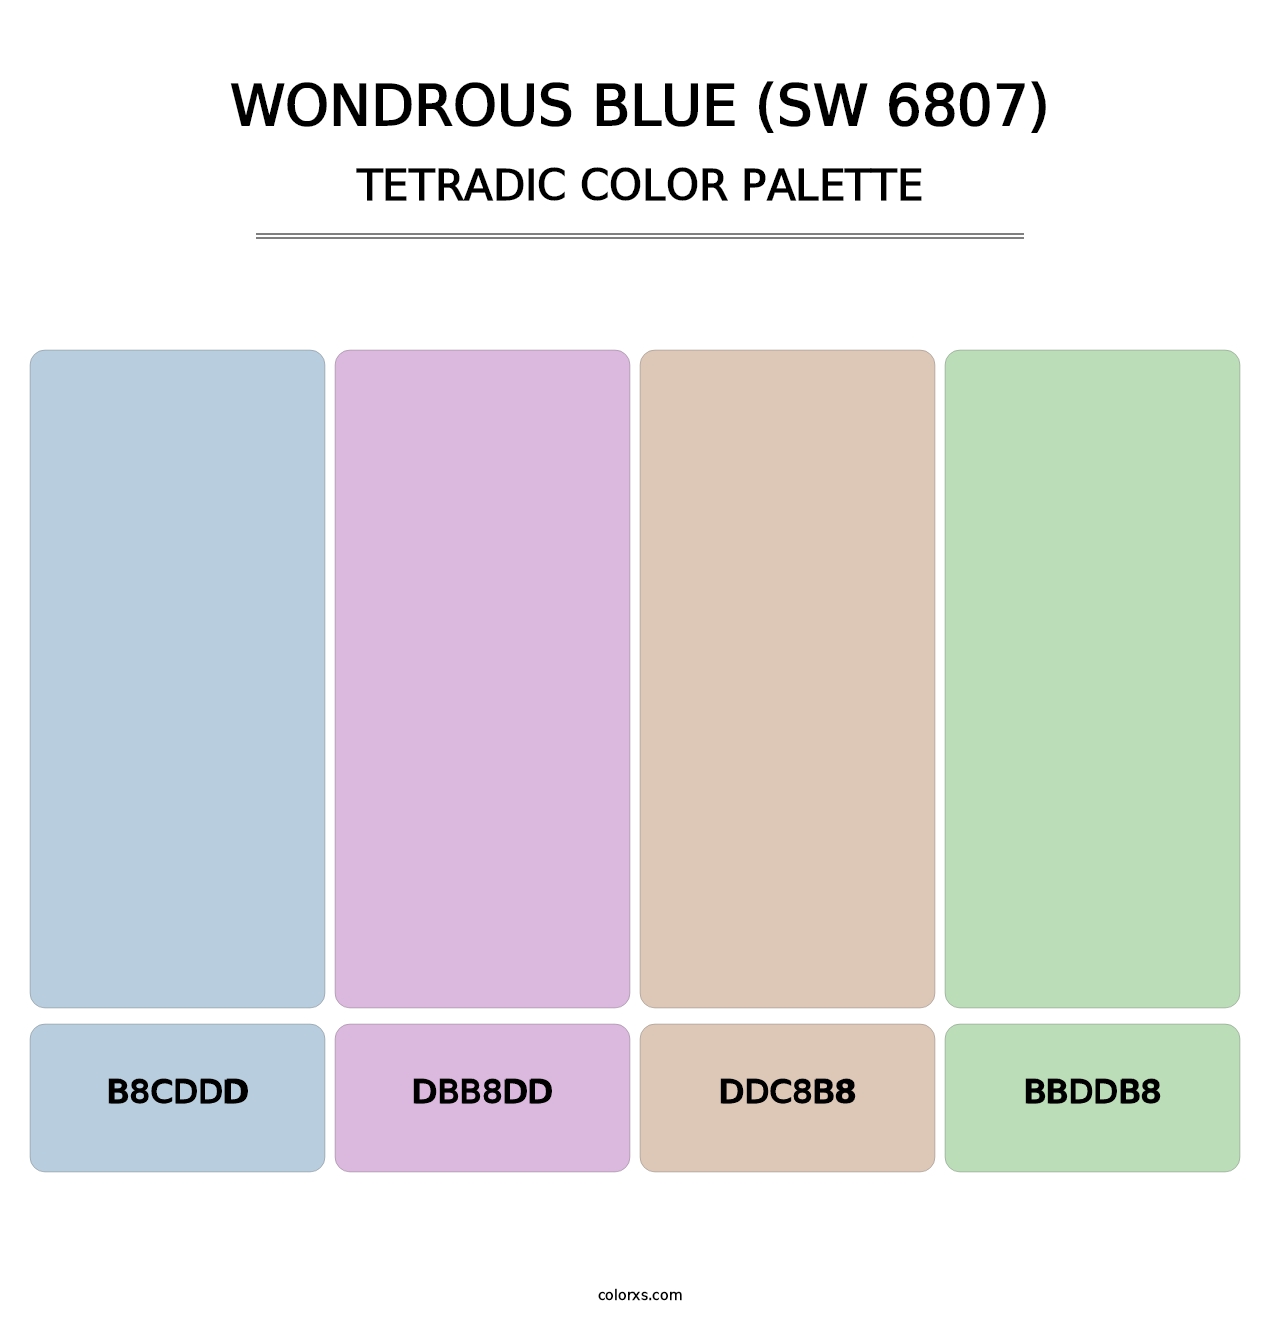 Wondrous Blue (SW 6807) - Tetradic Color Palette